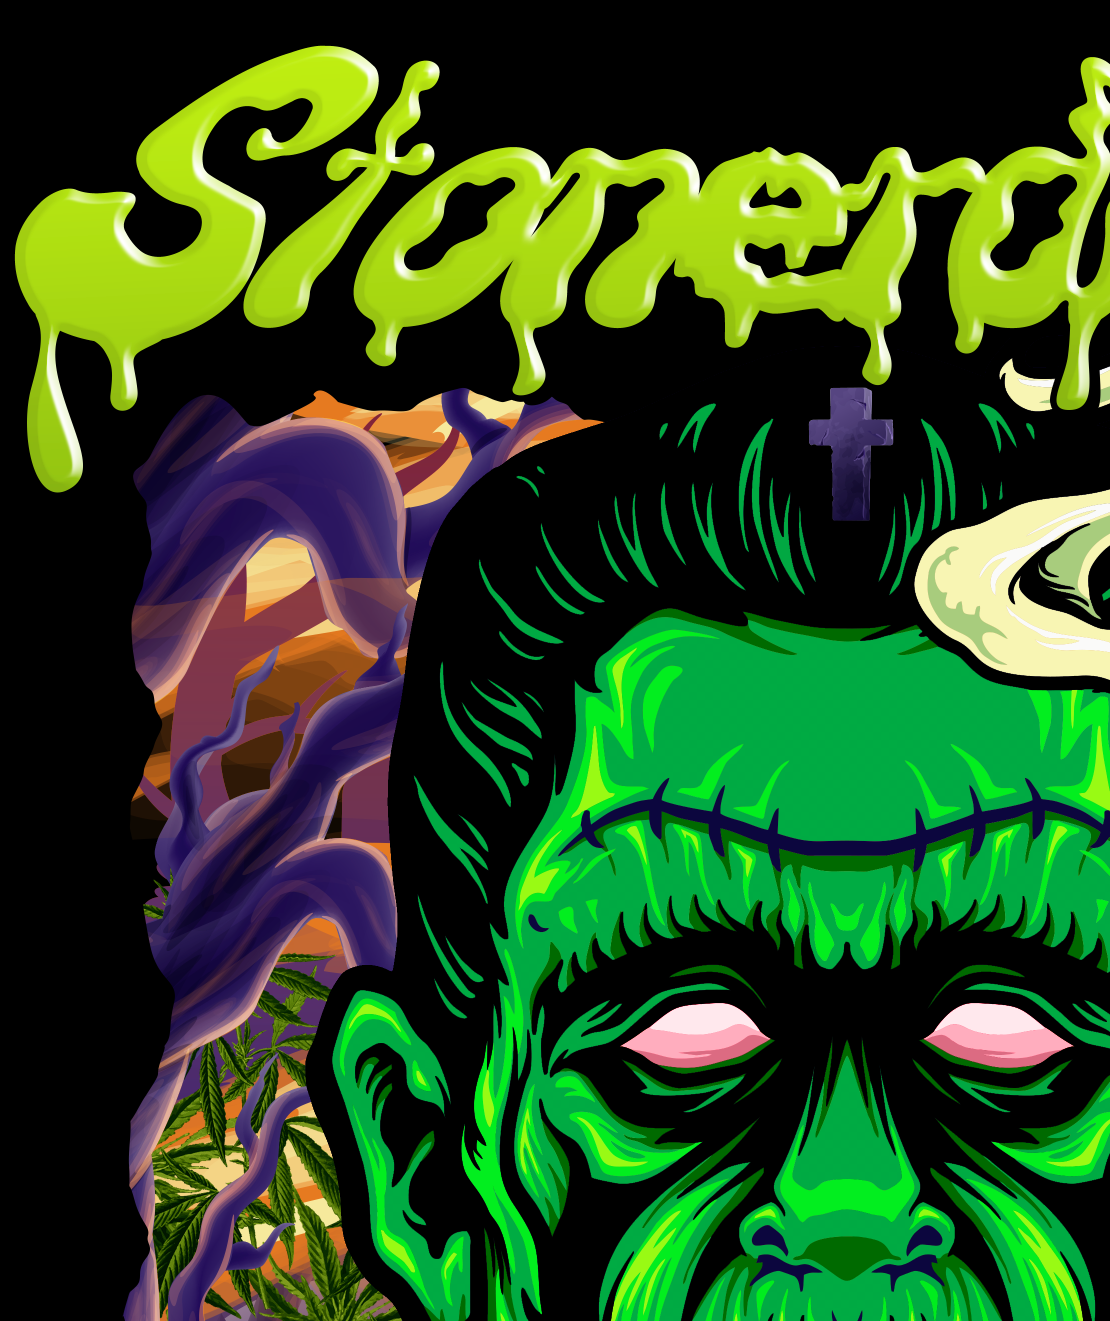 StonerDays Dankenstein Tank graphic with vibrant green Frankenstein design on black